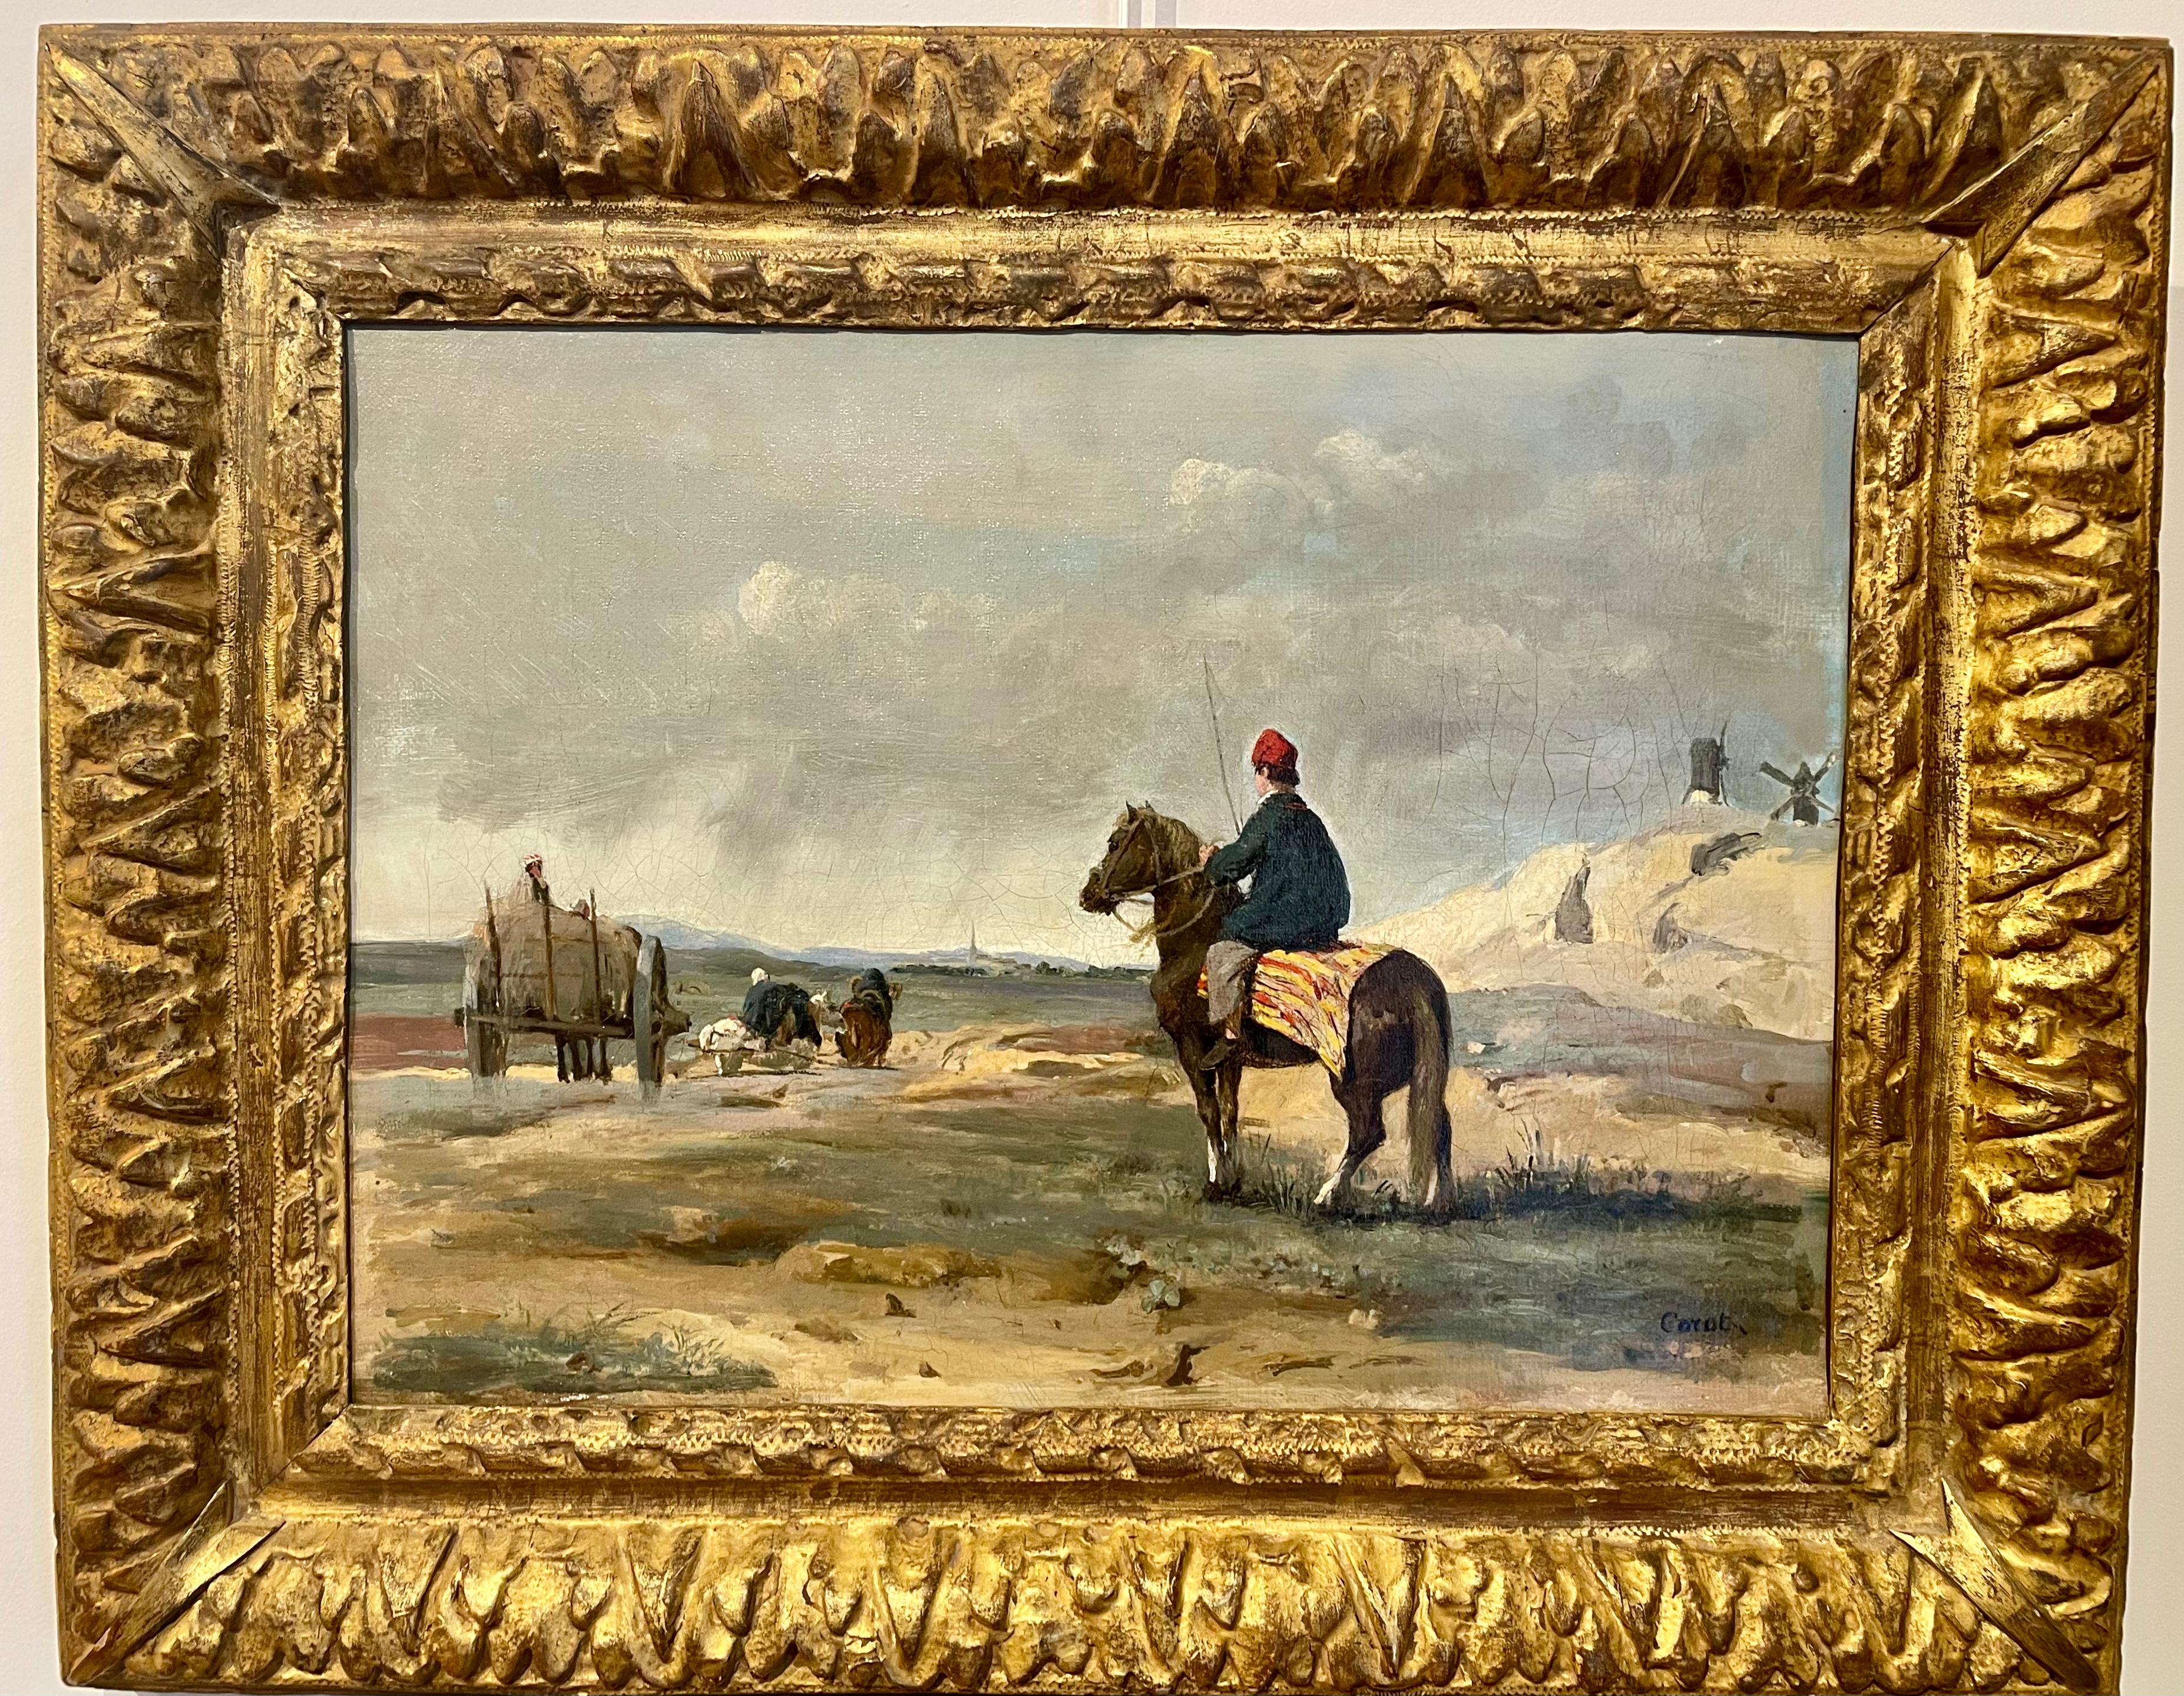 Der Fermier von Pithiviers – Painting von Jean-Baptiste-Camille Corot